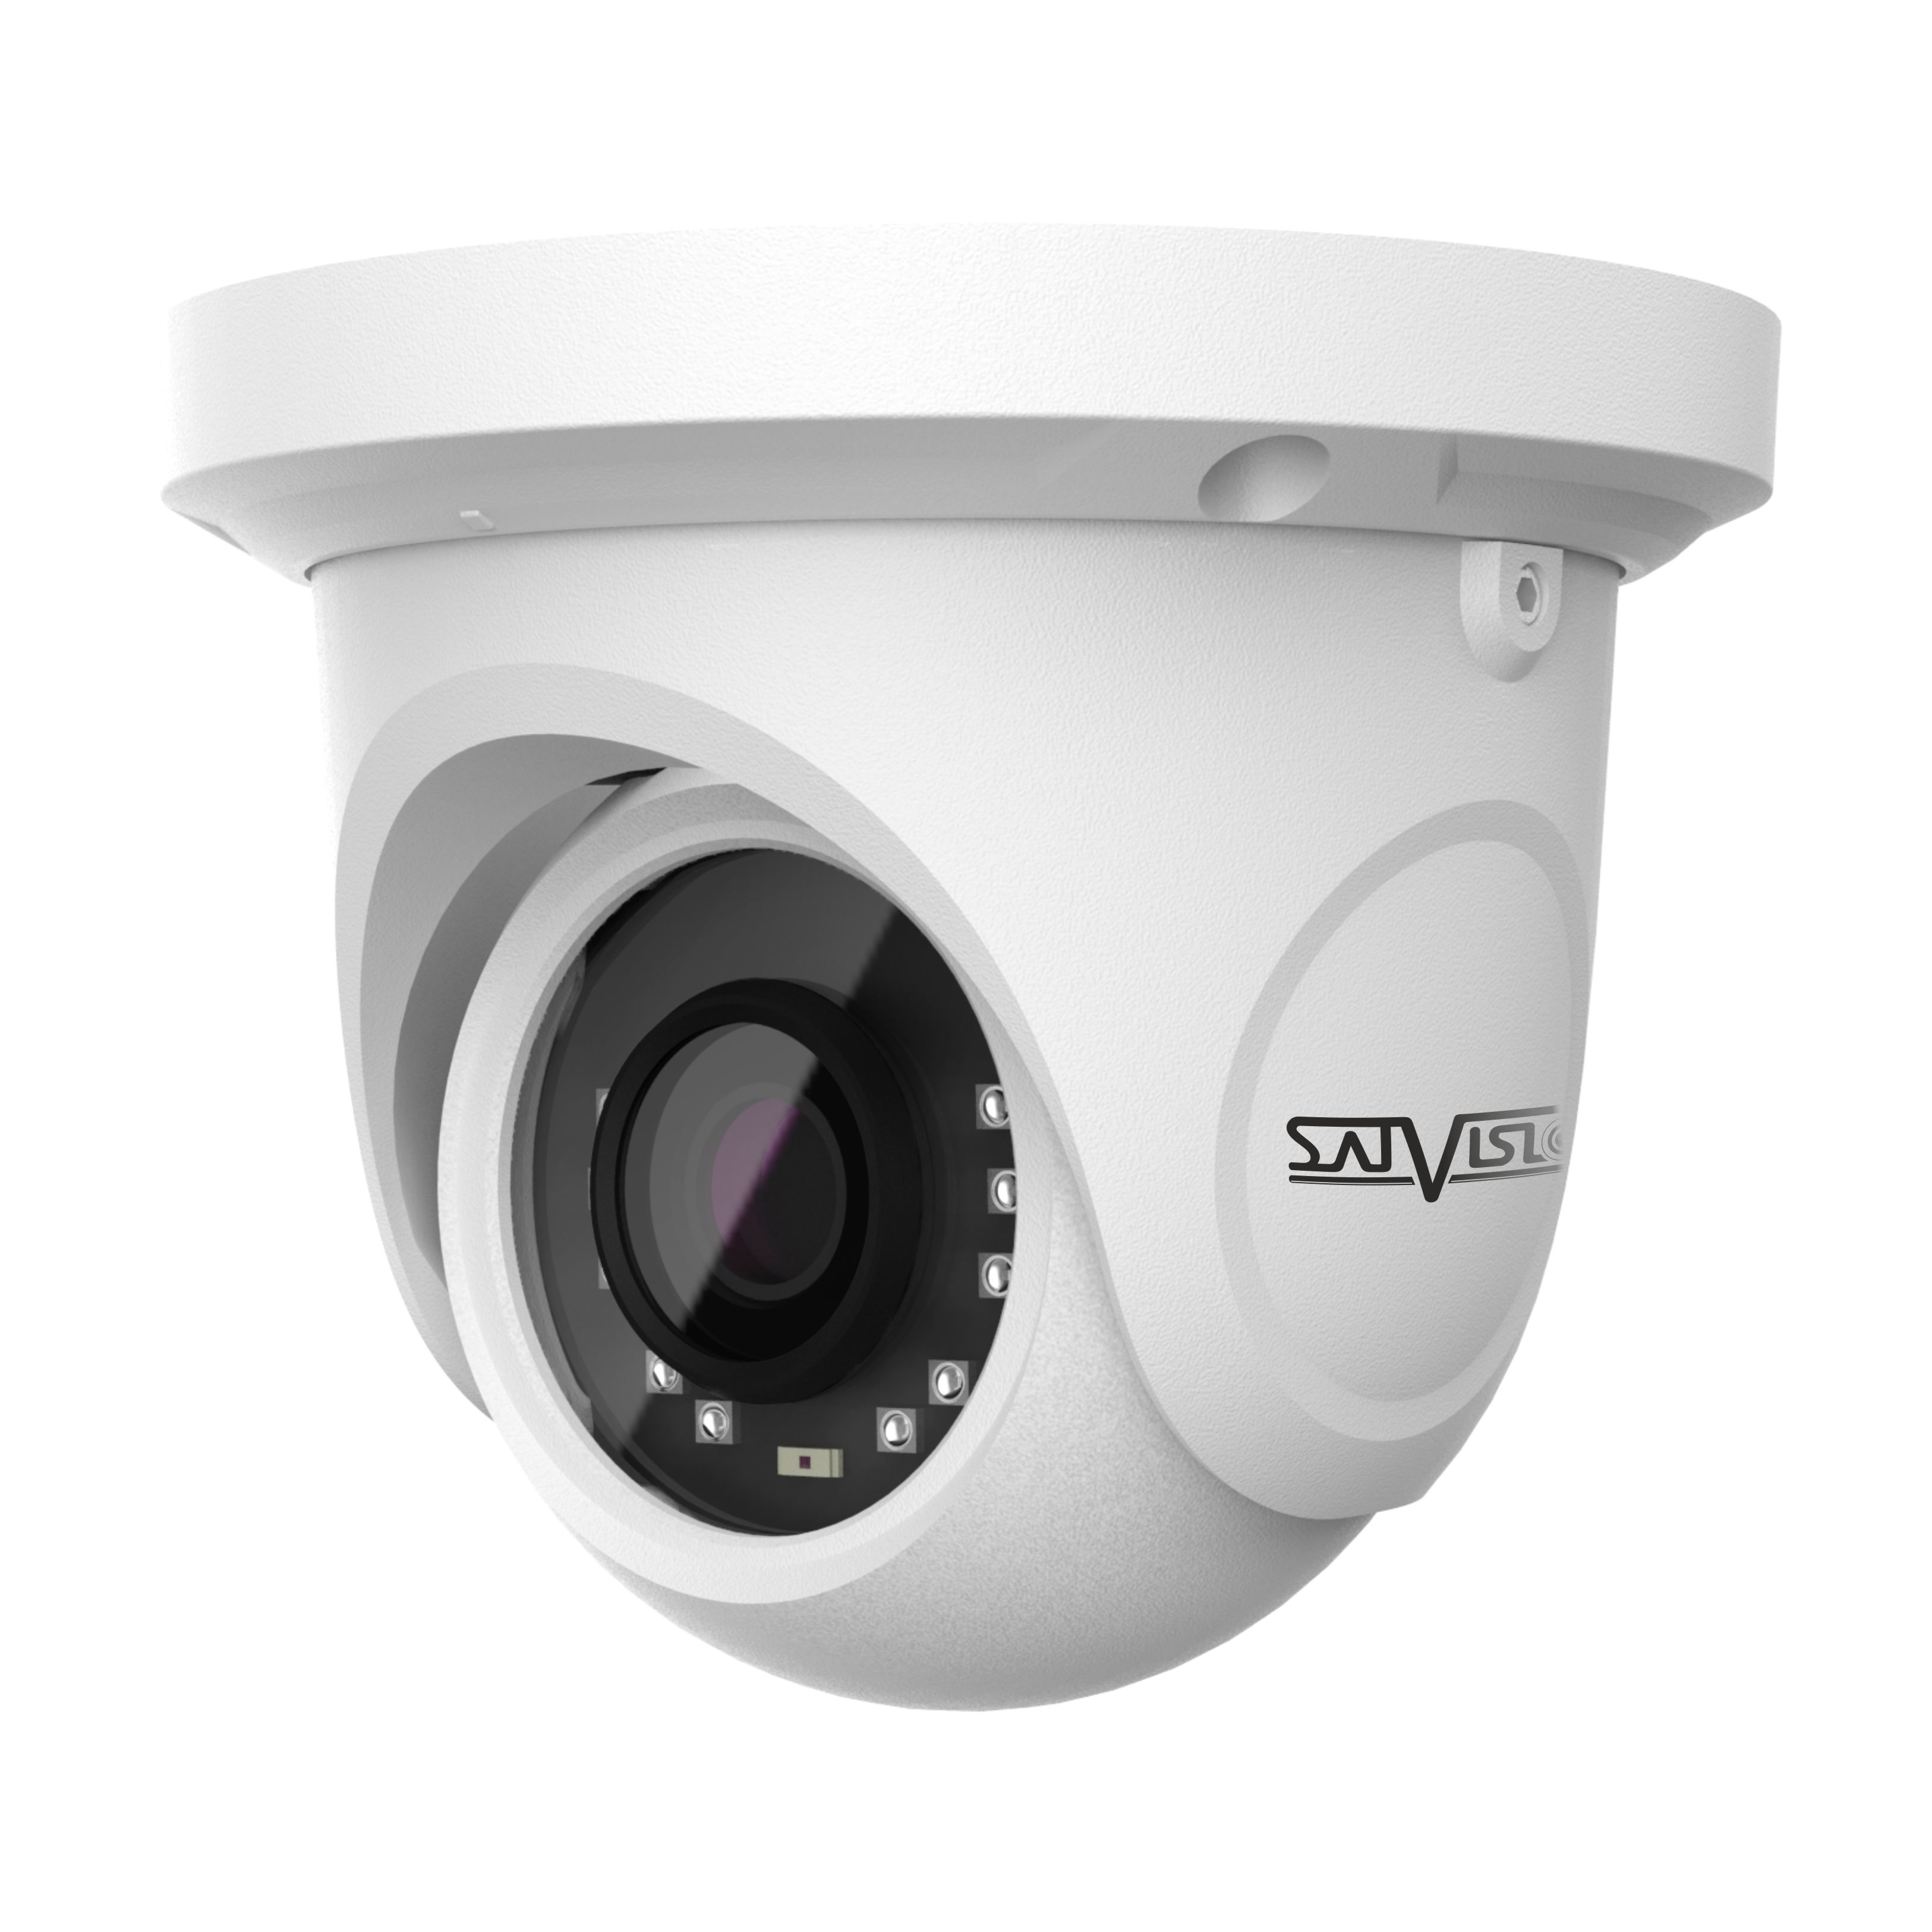 Камера купить тверь. Svi-s323v SD SL 2mpix 2.8-12mm видеокамера IP. Камера видеонаблюдения Satvision svi d223a SD. Видеокамера Satvision svi-d227 2мп 2.8мм SP. Satvision 223a-SD камера.